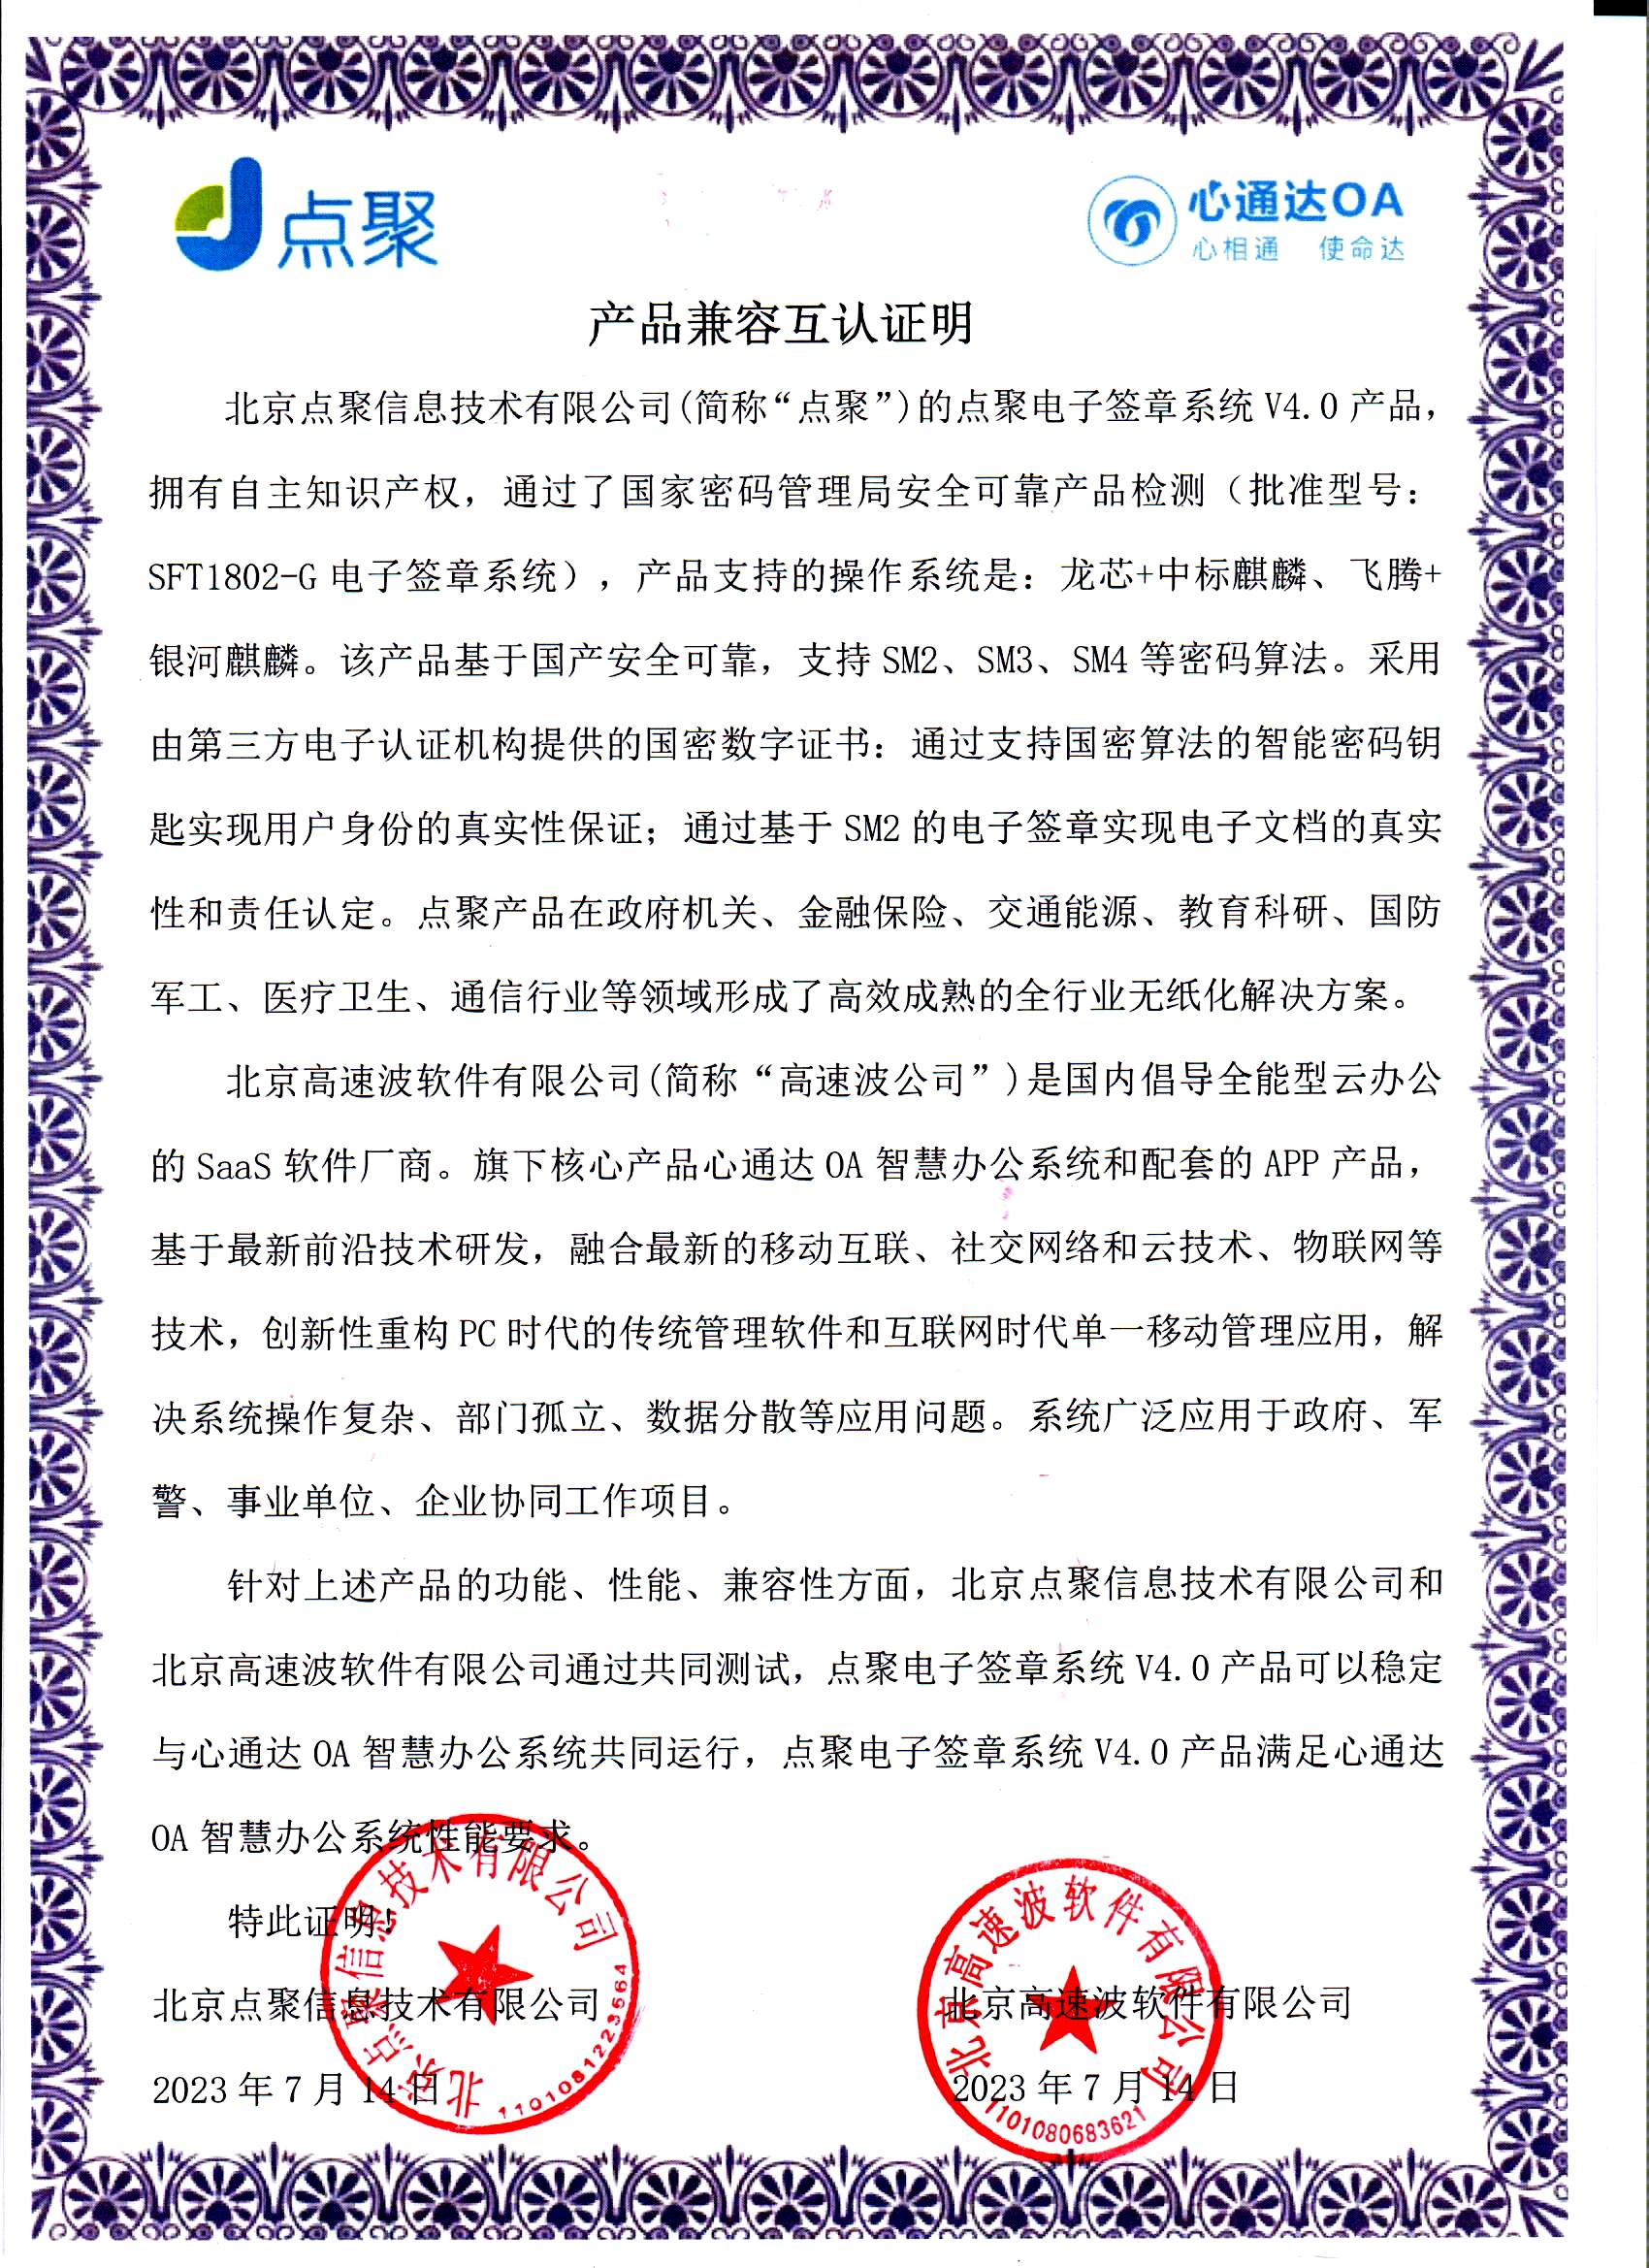 北京点聚信息技术有限公司v4.0兼容互认证明